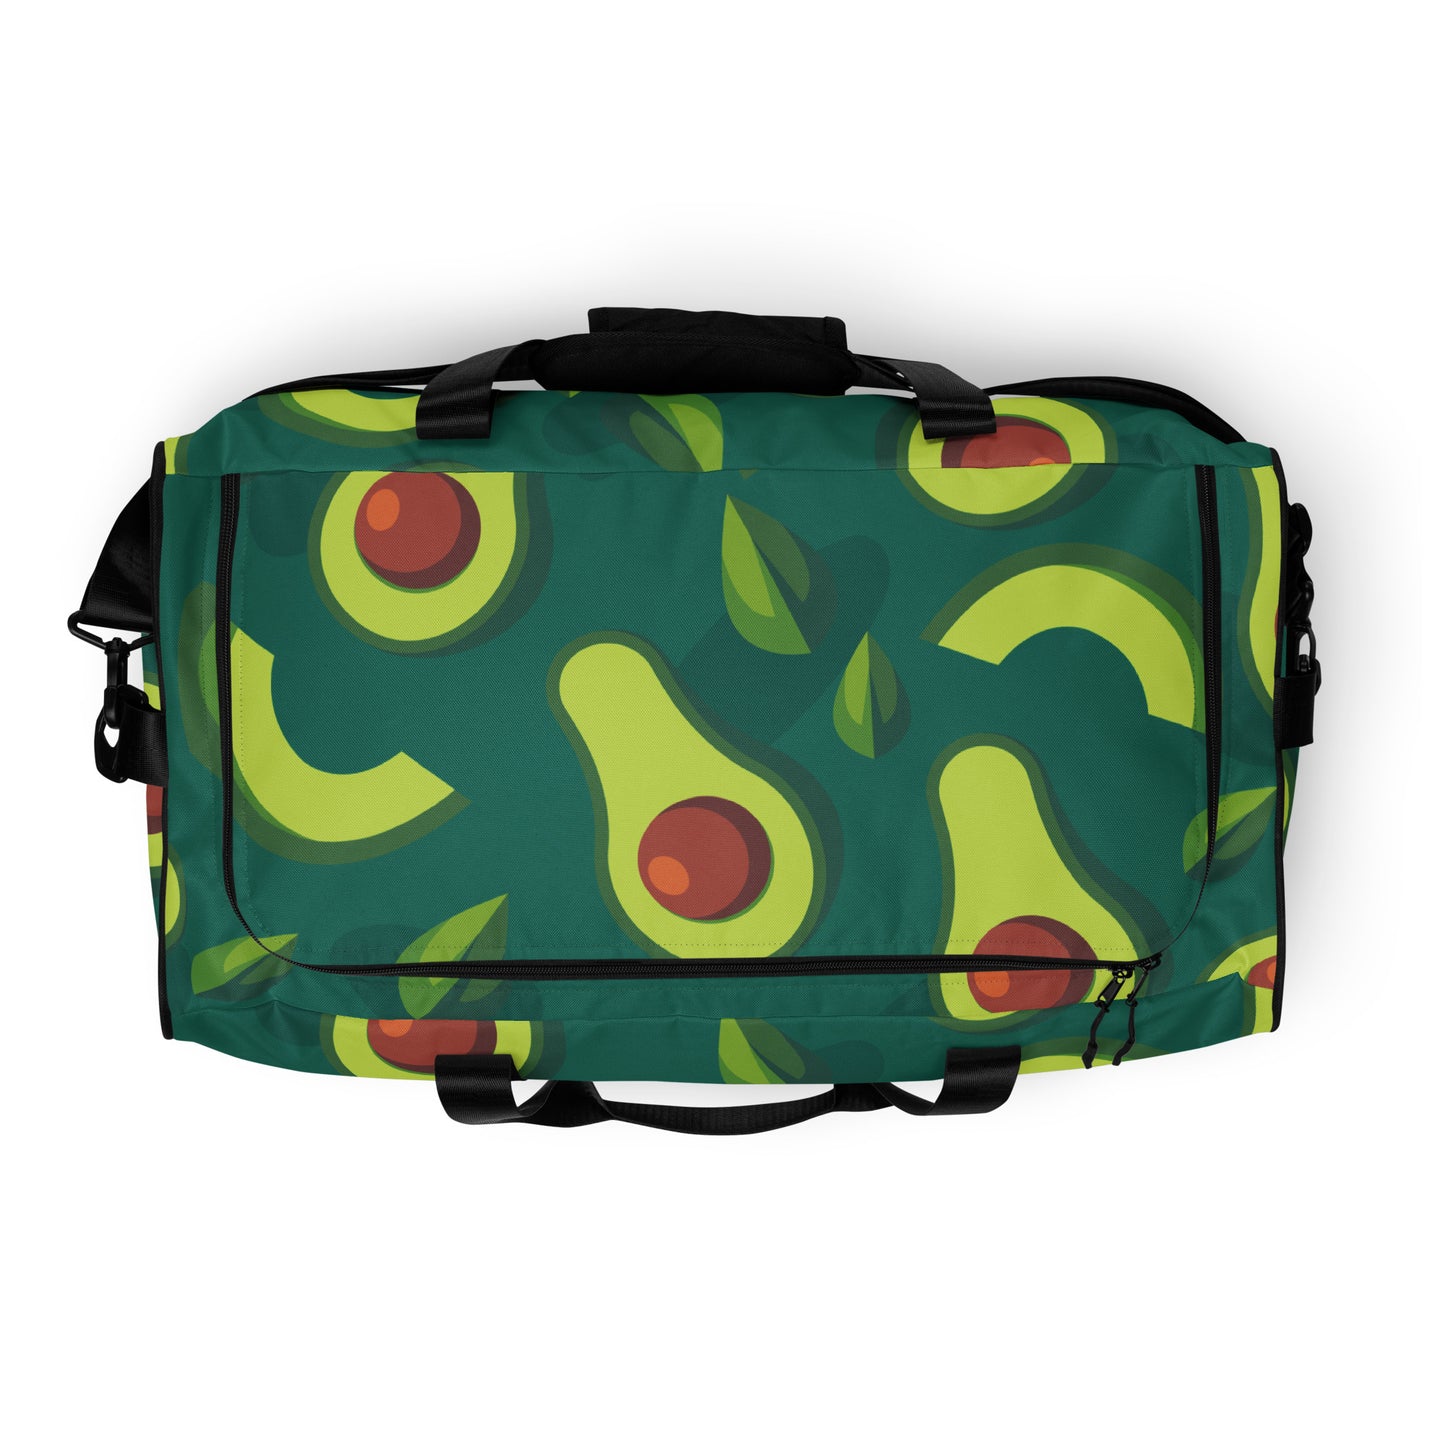 Avocado - Sustainably Made Duffle Bag